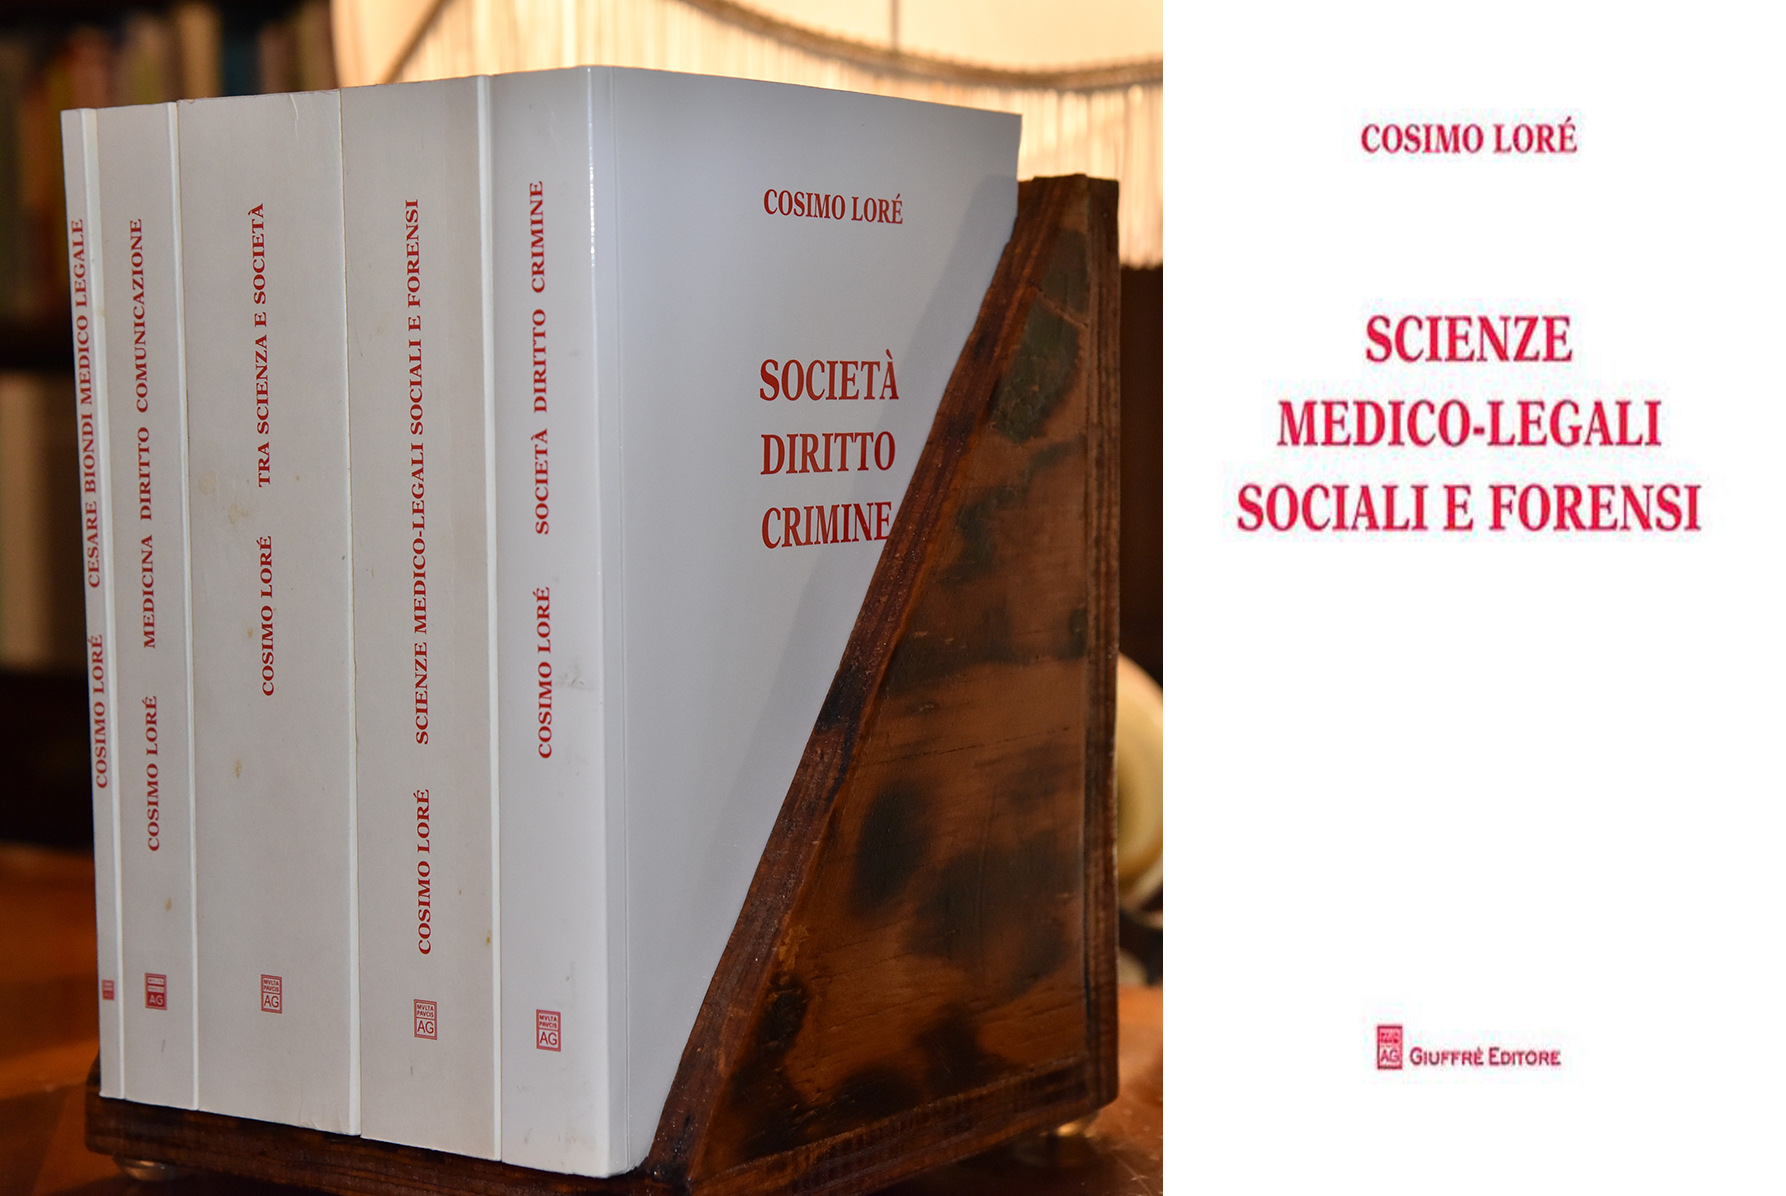 Scienze medico-legali sociali e forensi - Cosimo Lorè